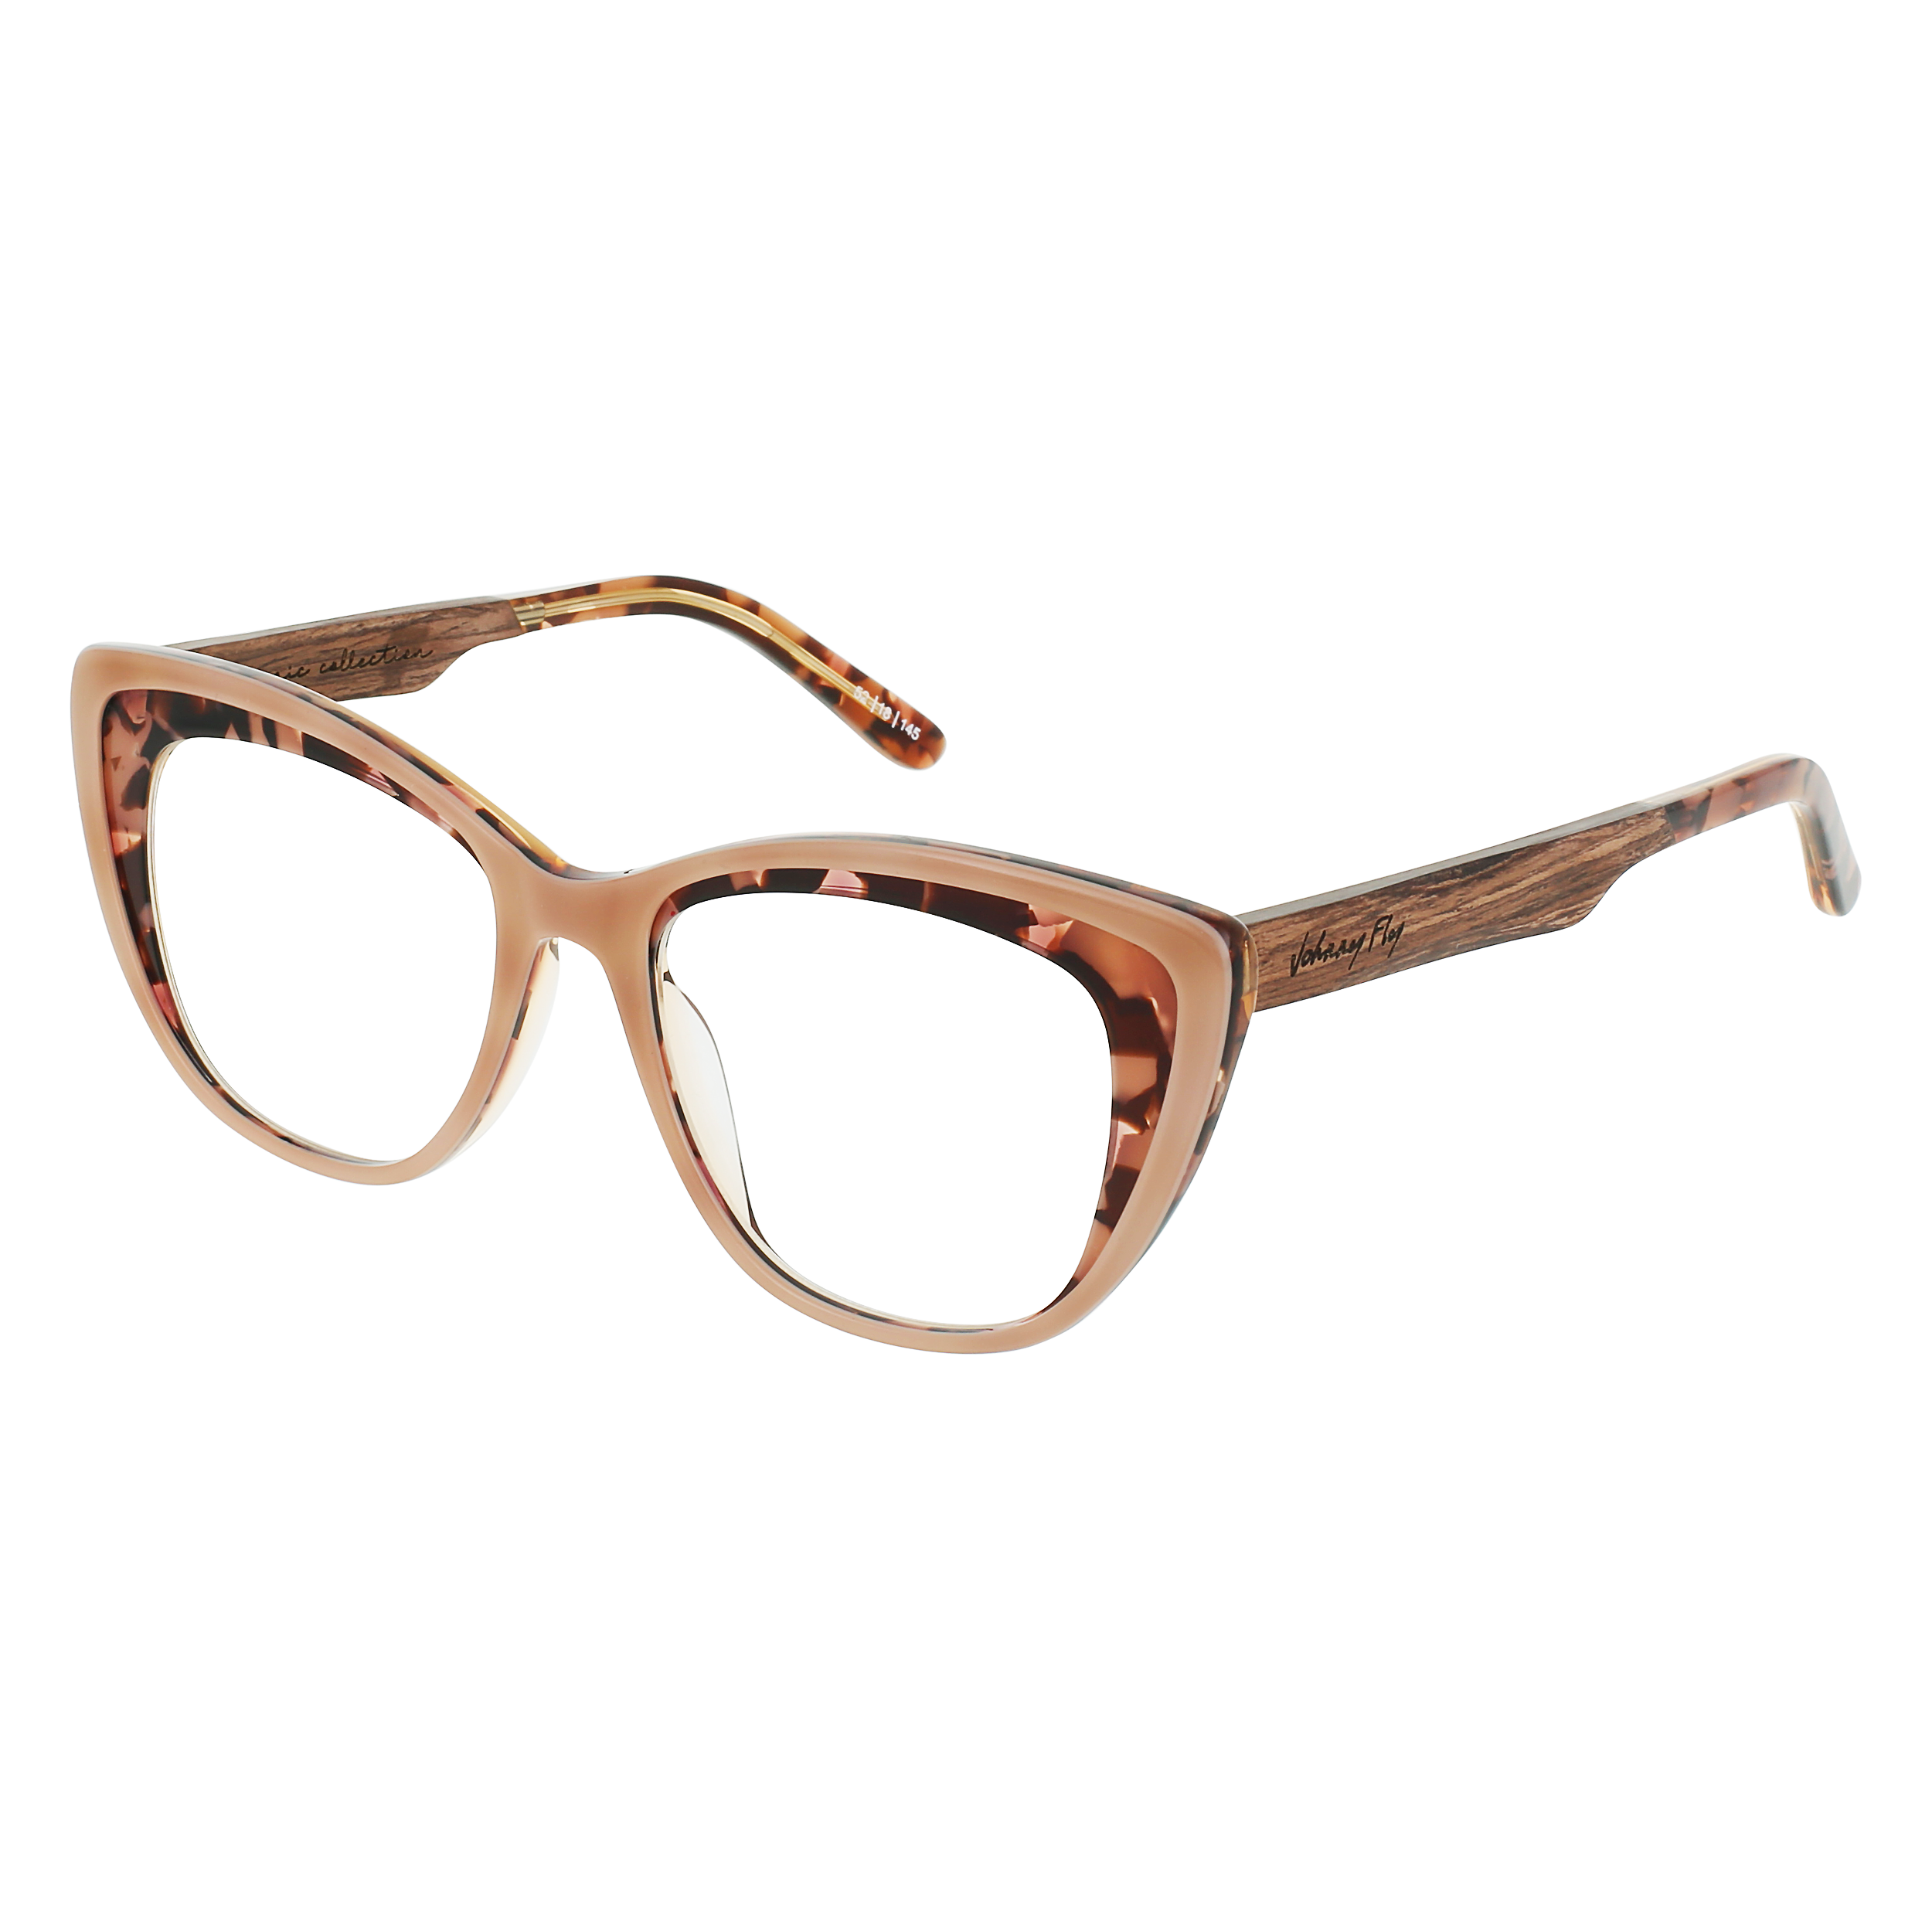 RUNWAY Eyeglasses Frame - Mauve Tortoise- Johnny Fly | RUN-MVTRT-FRA | | 